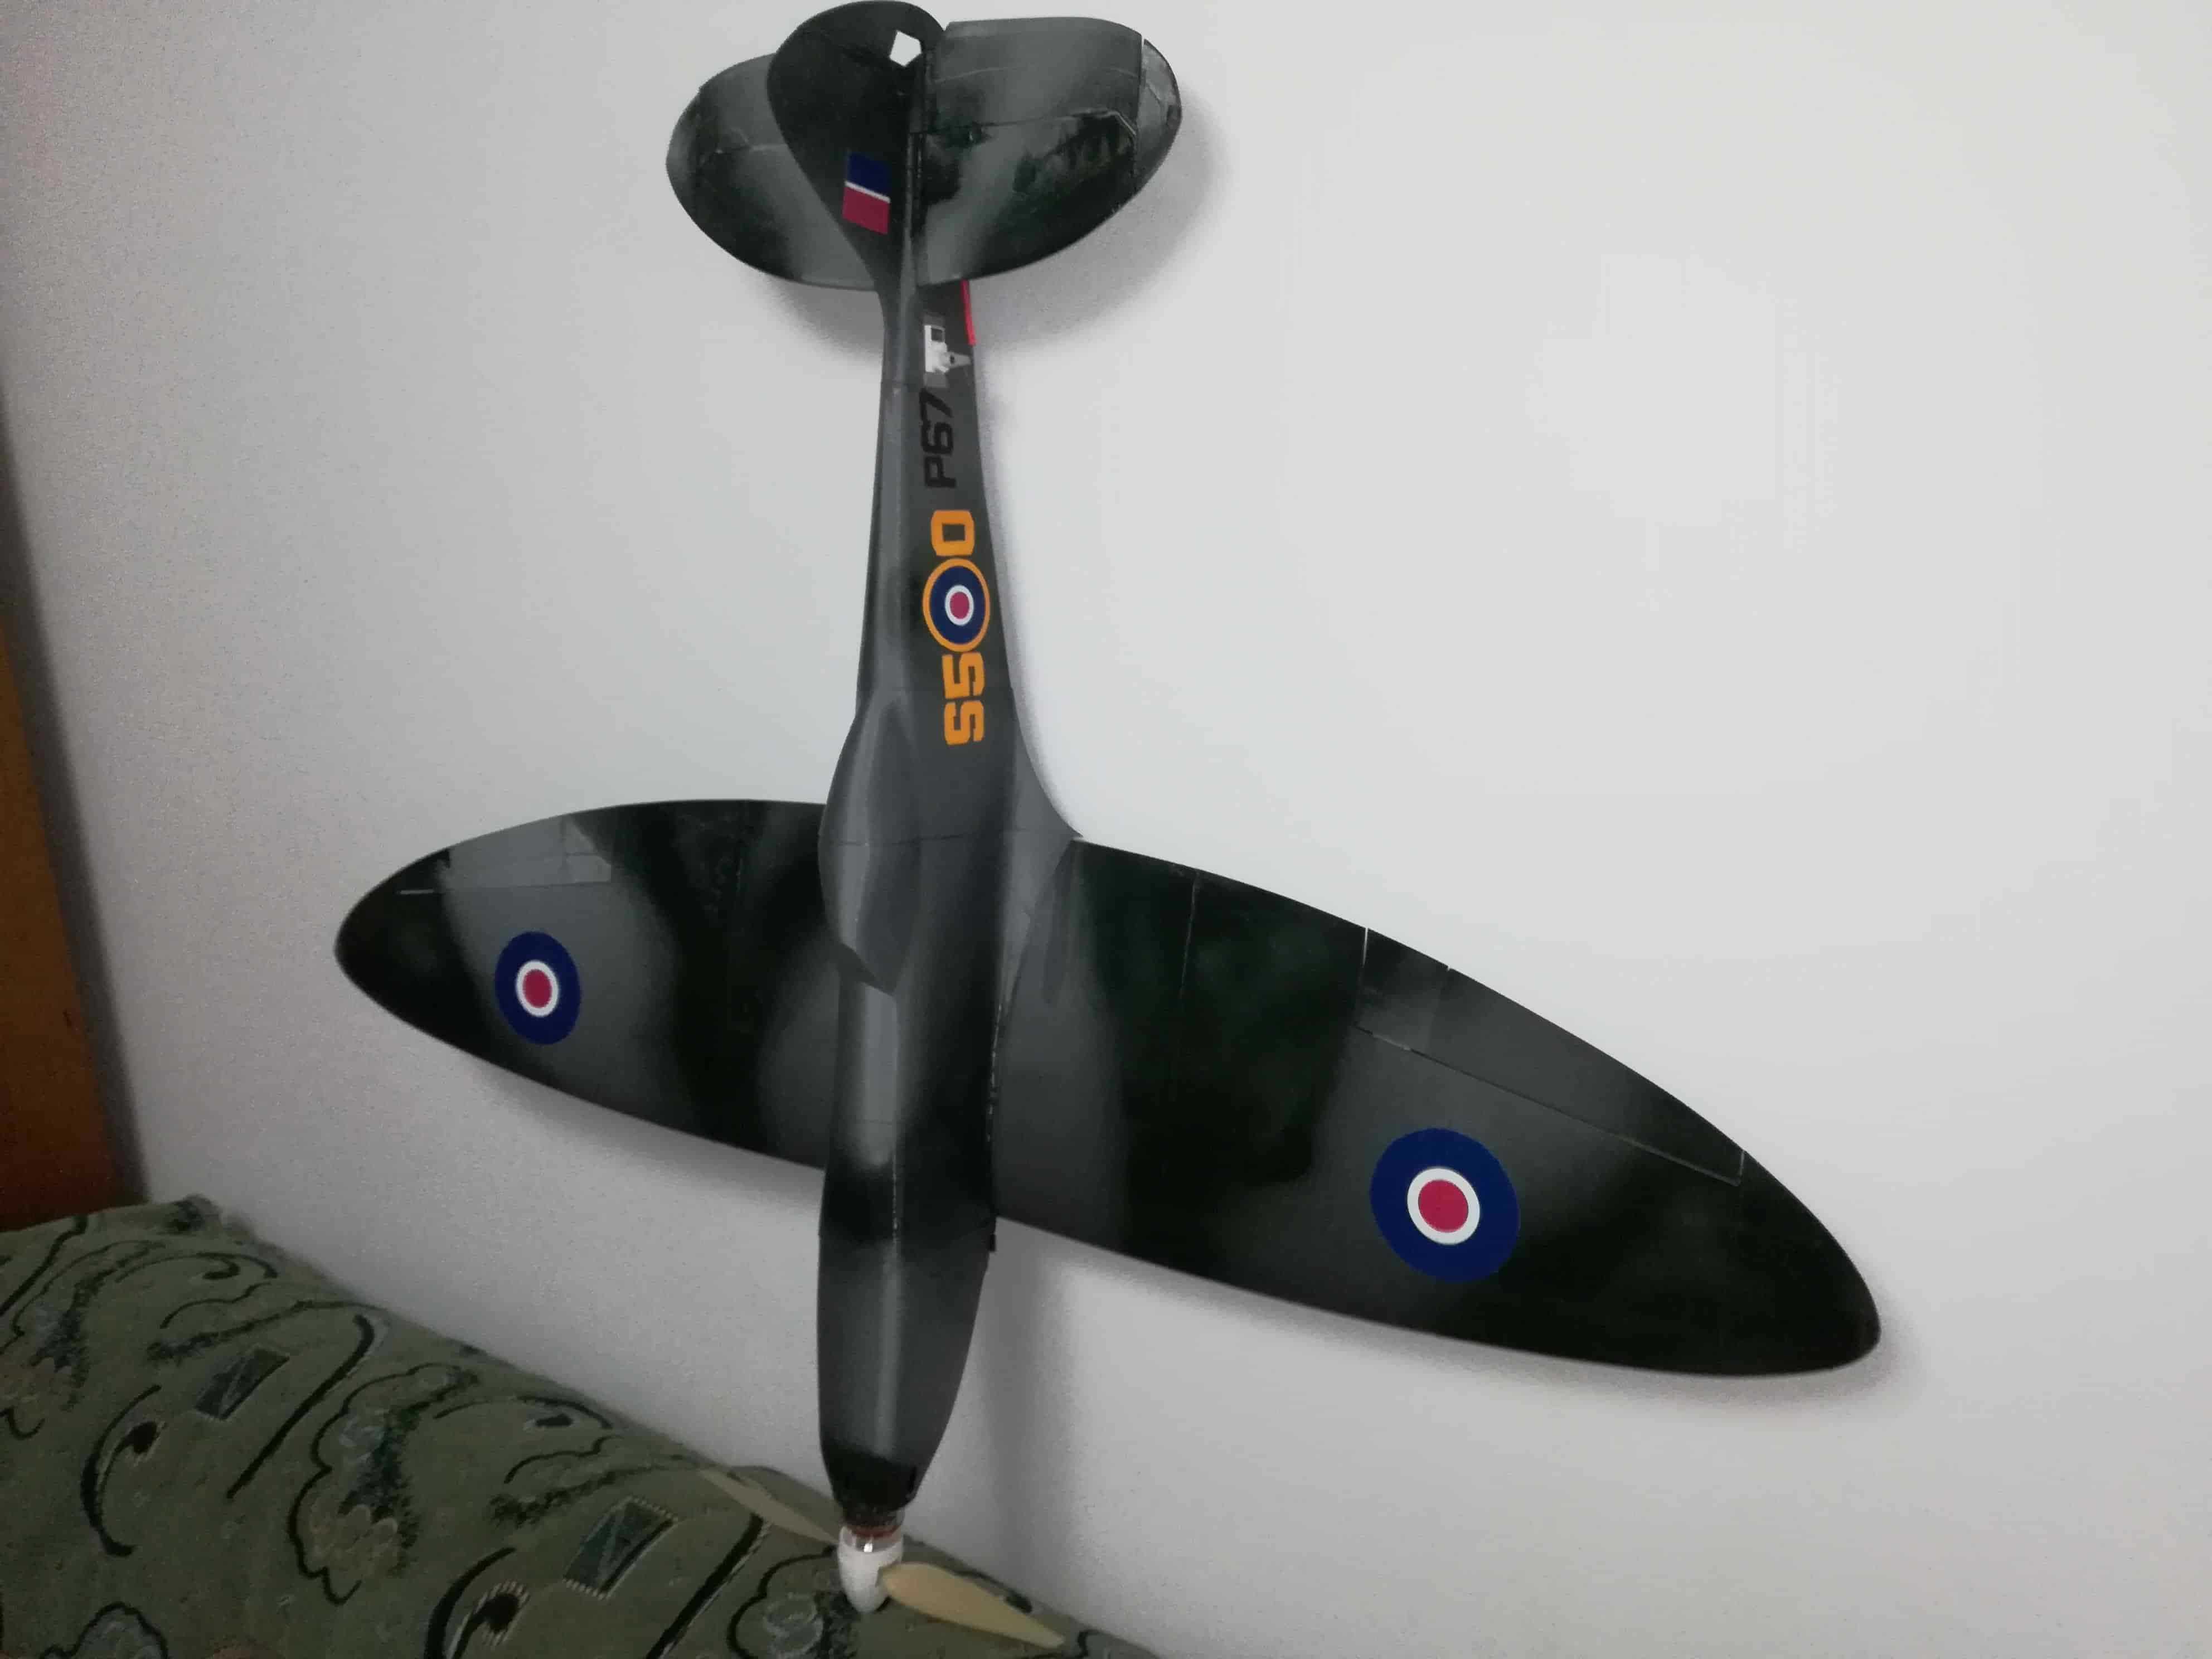 Aeromodel printat 3D pentru radiocomandă